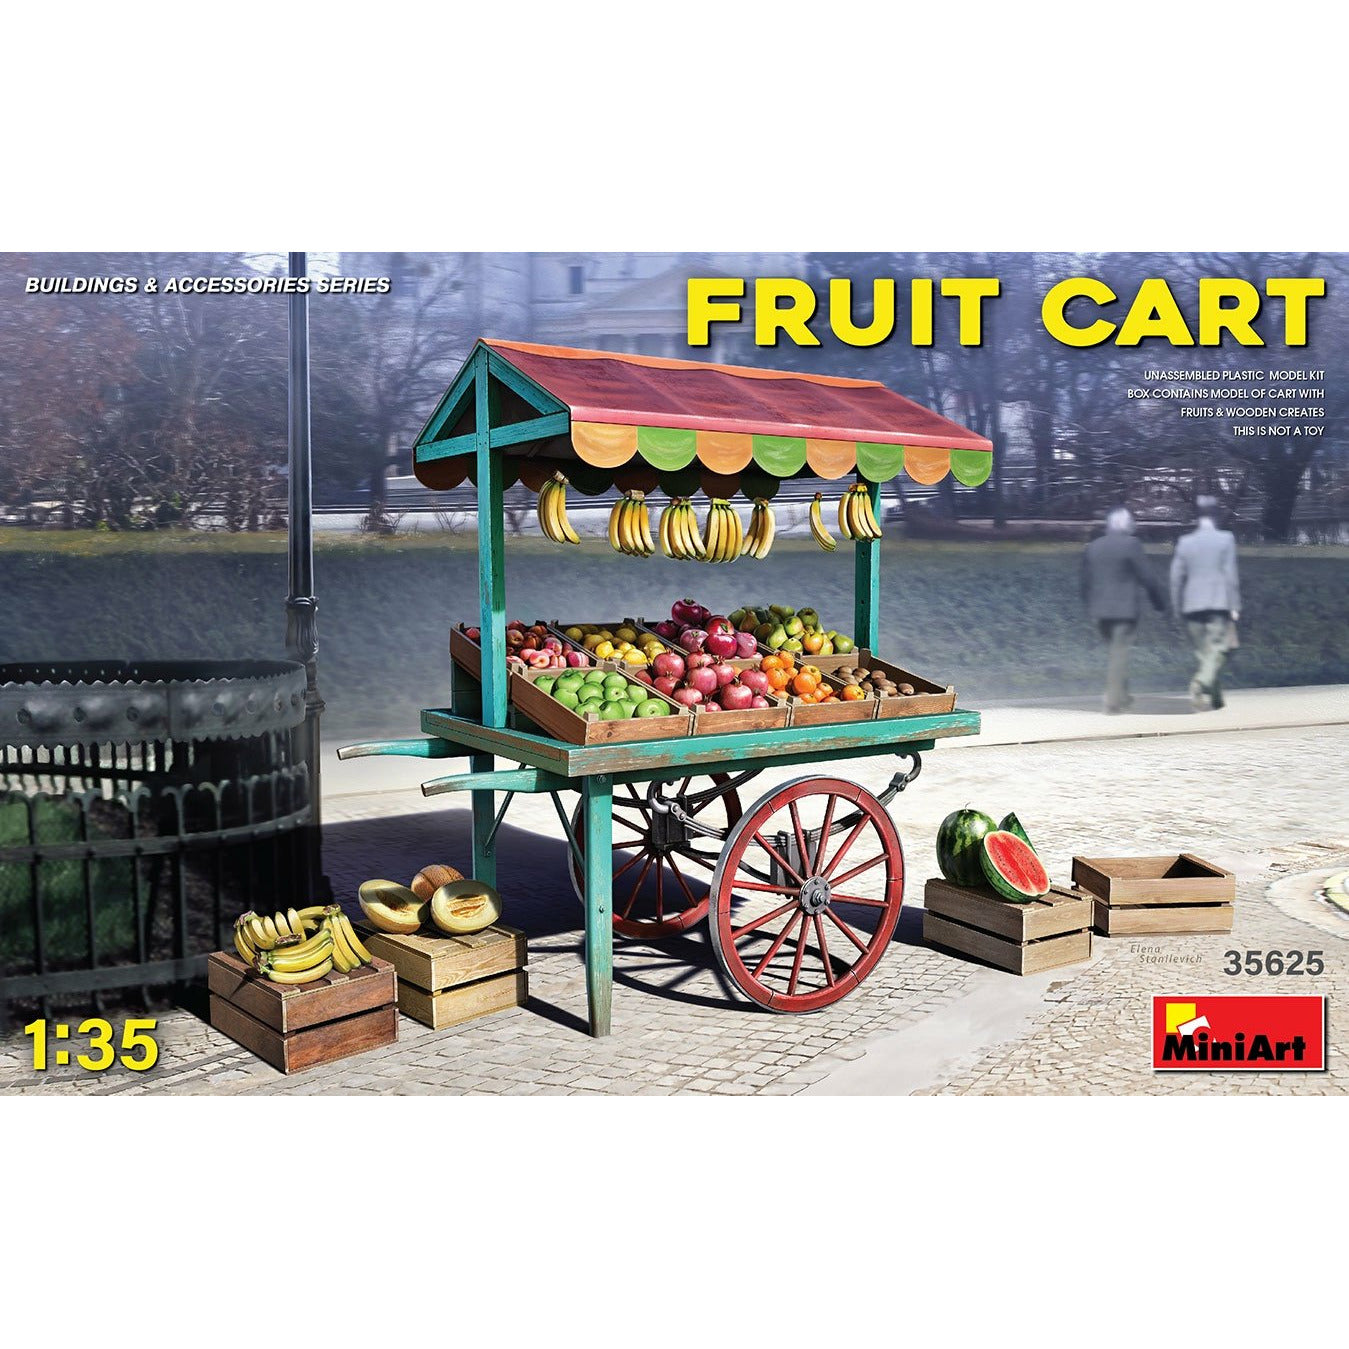 Fruit Cart #35625 1/35 Scenery Kit by MiniArt